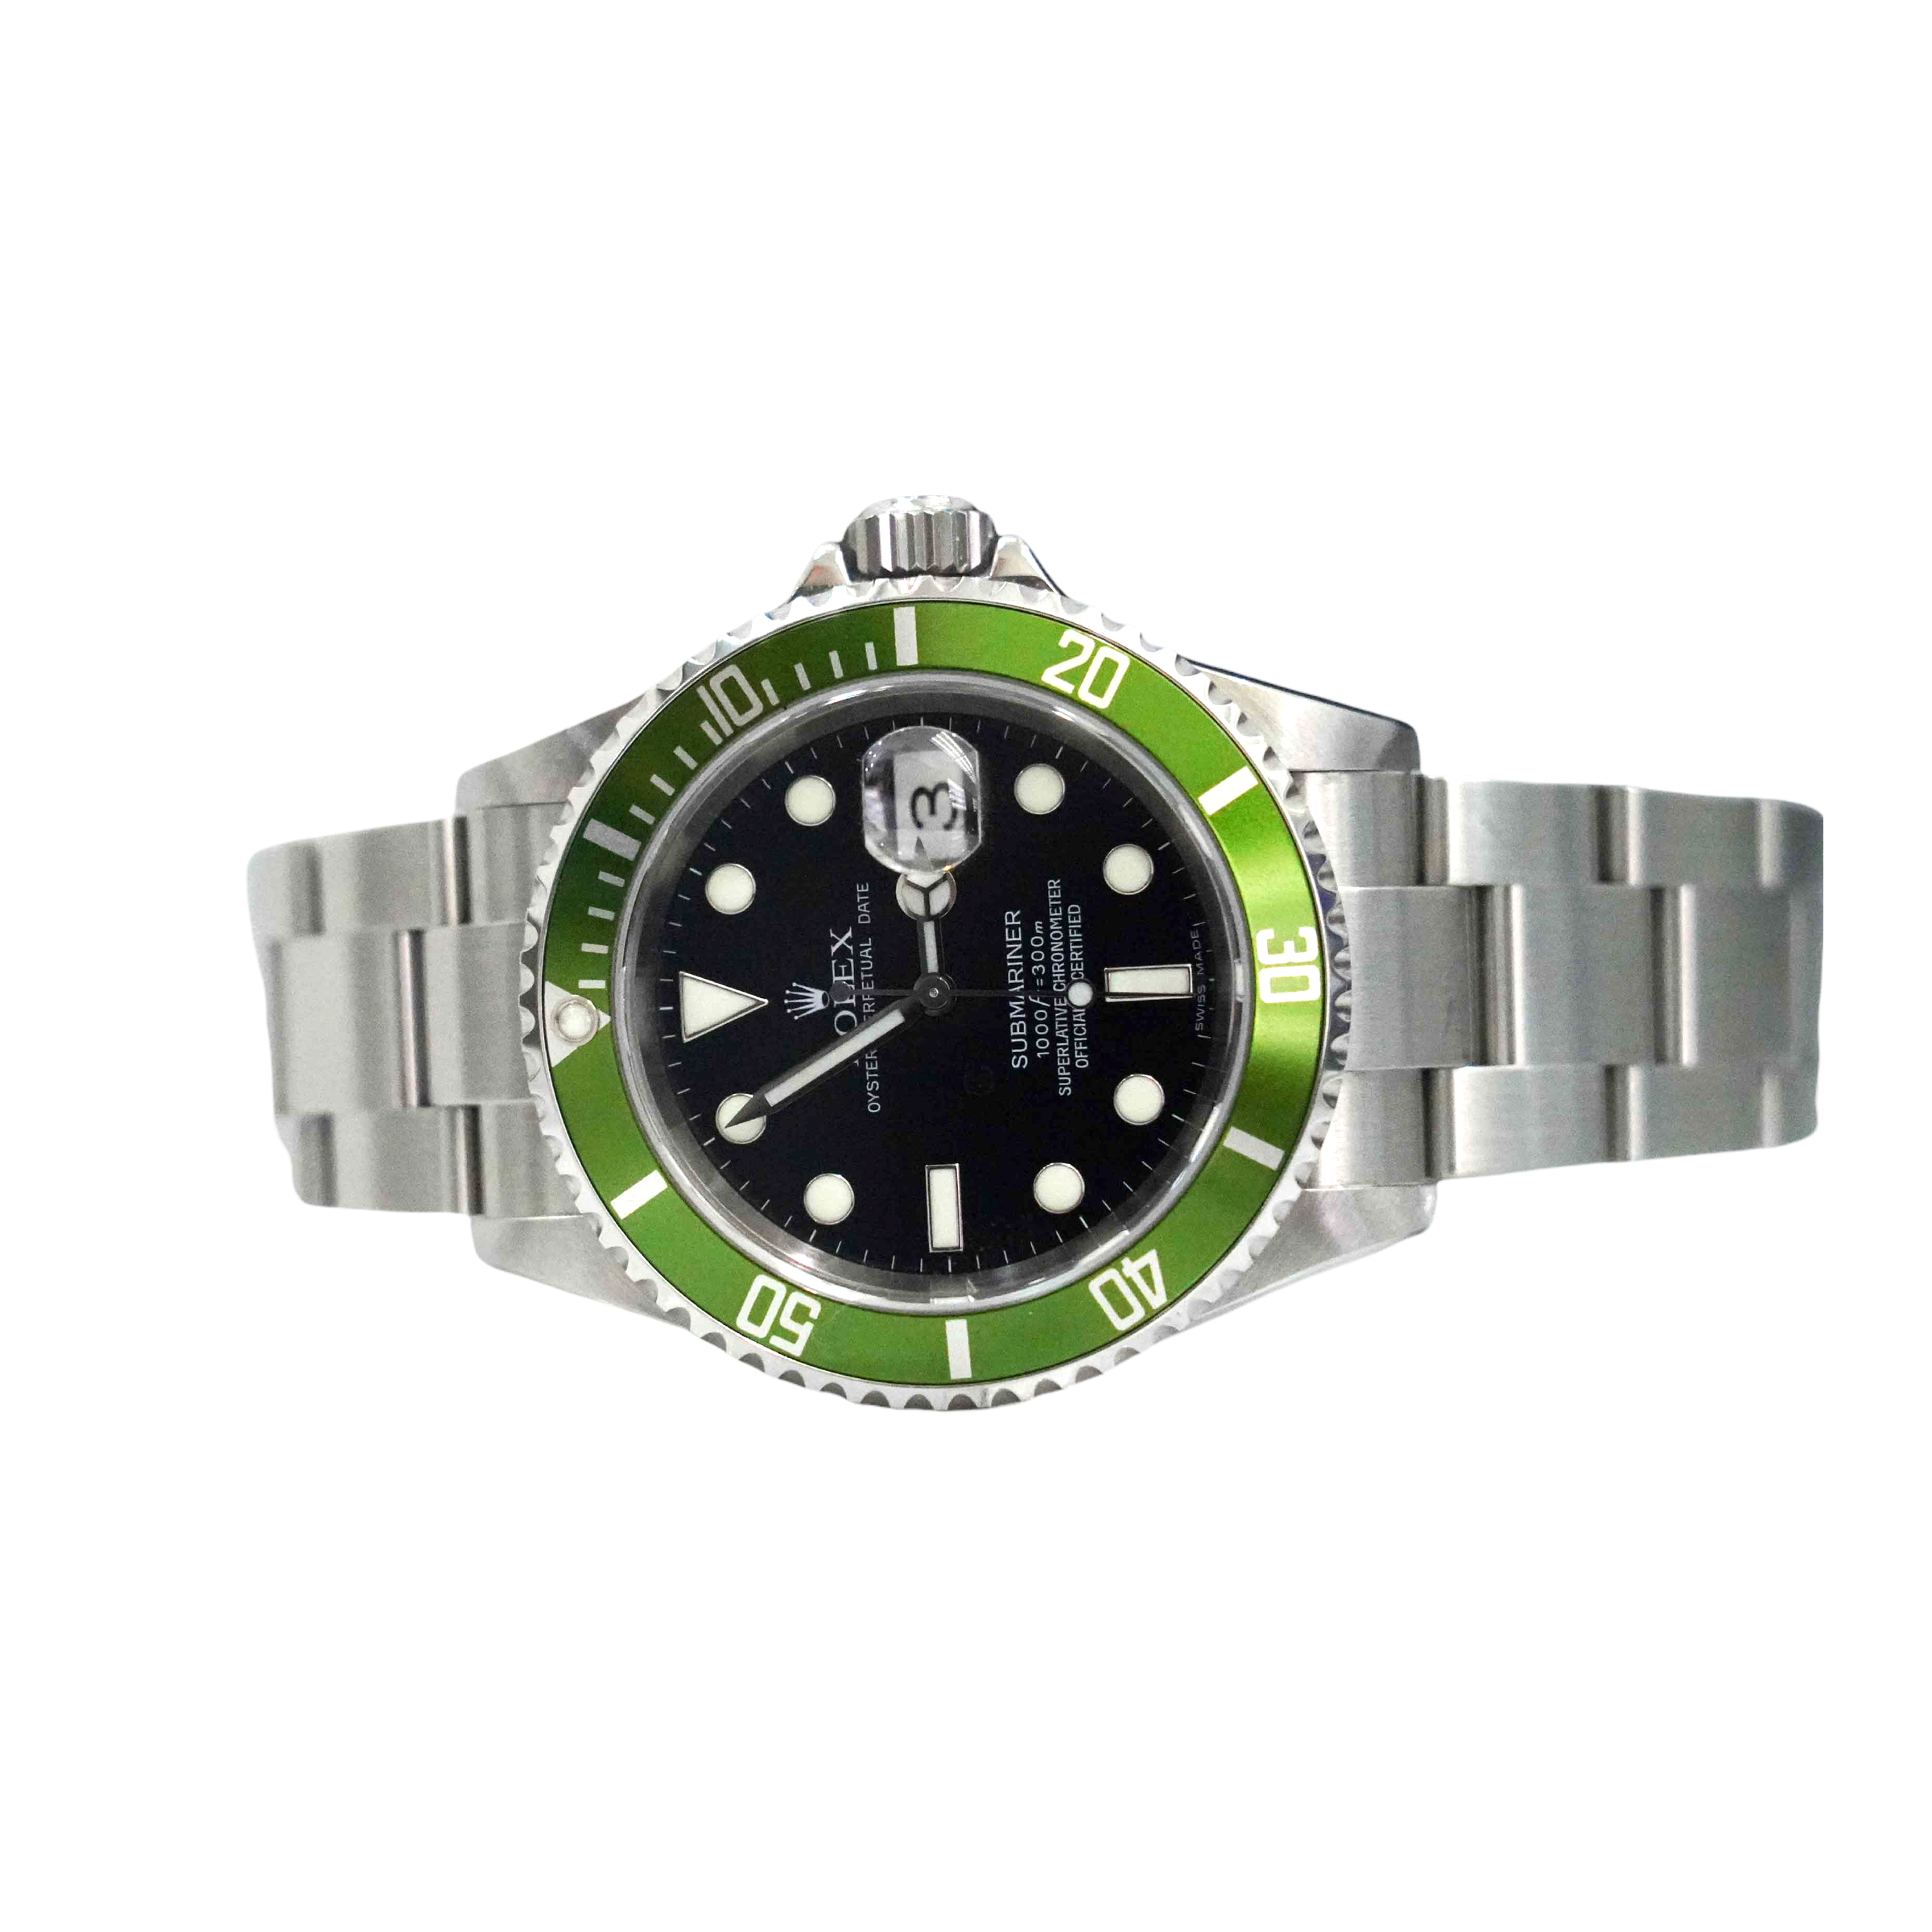 Rolex Submariner Date Watches, ref 116610LV